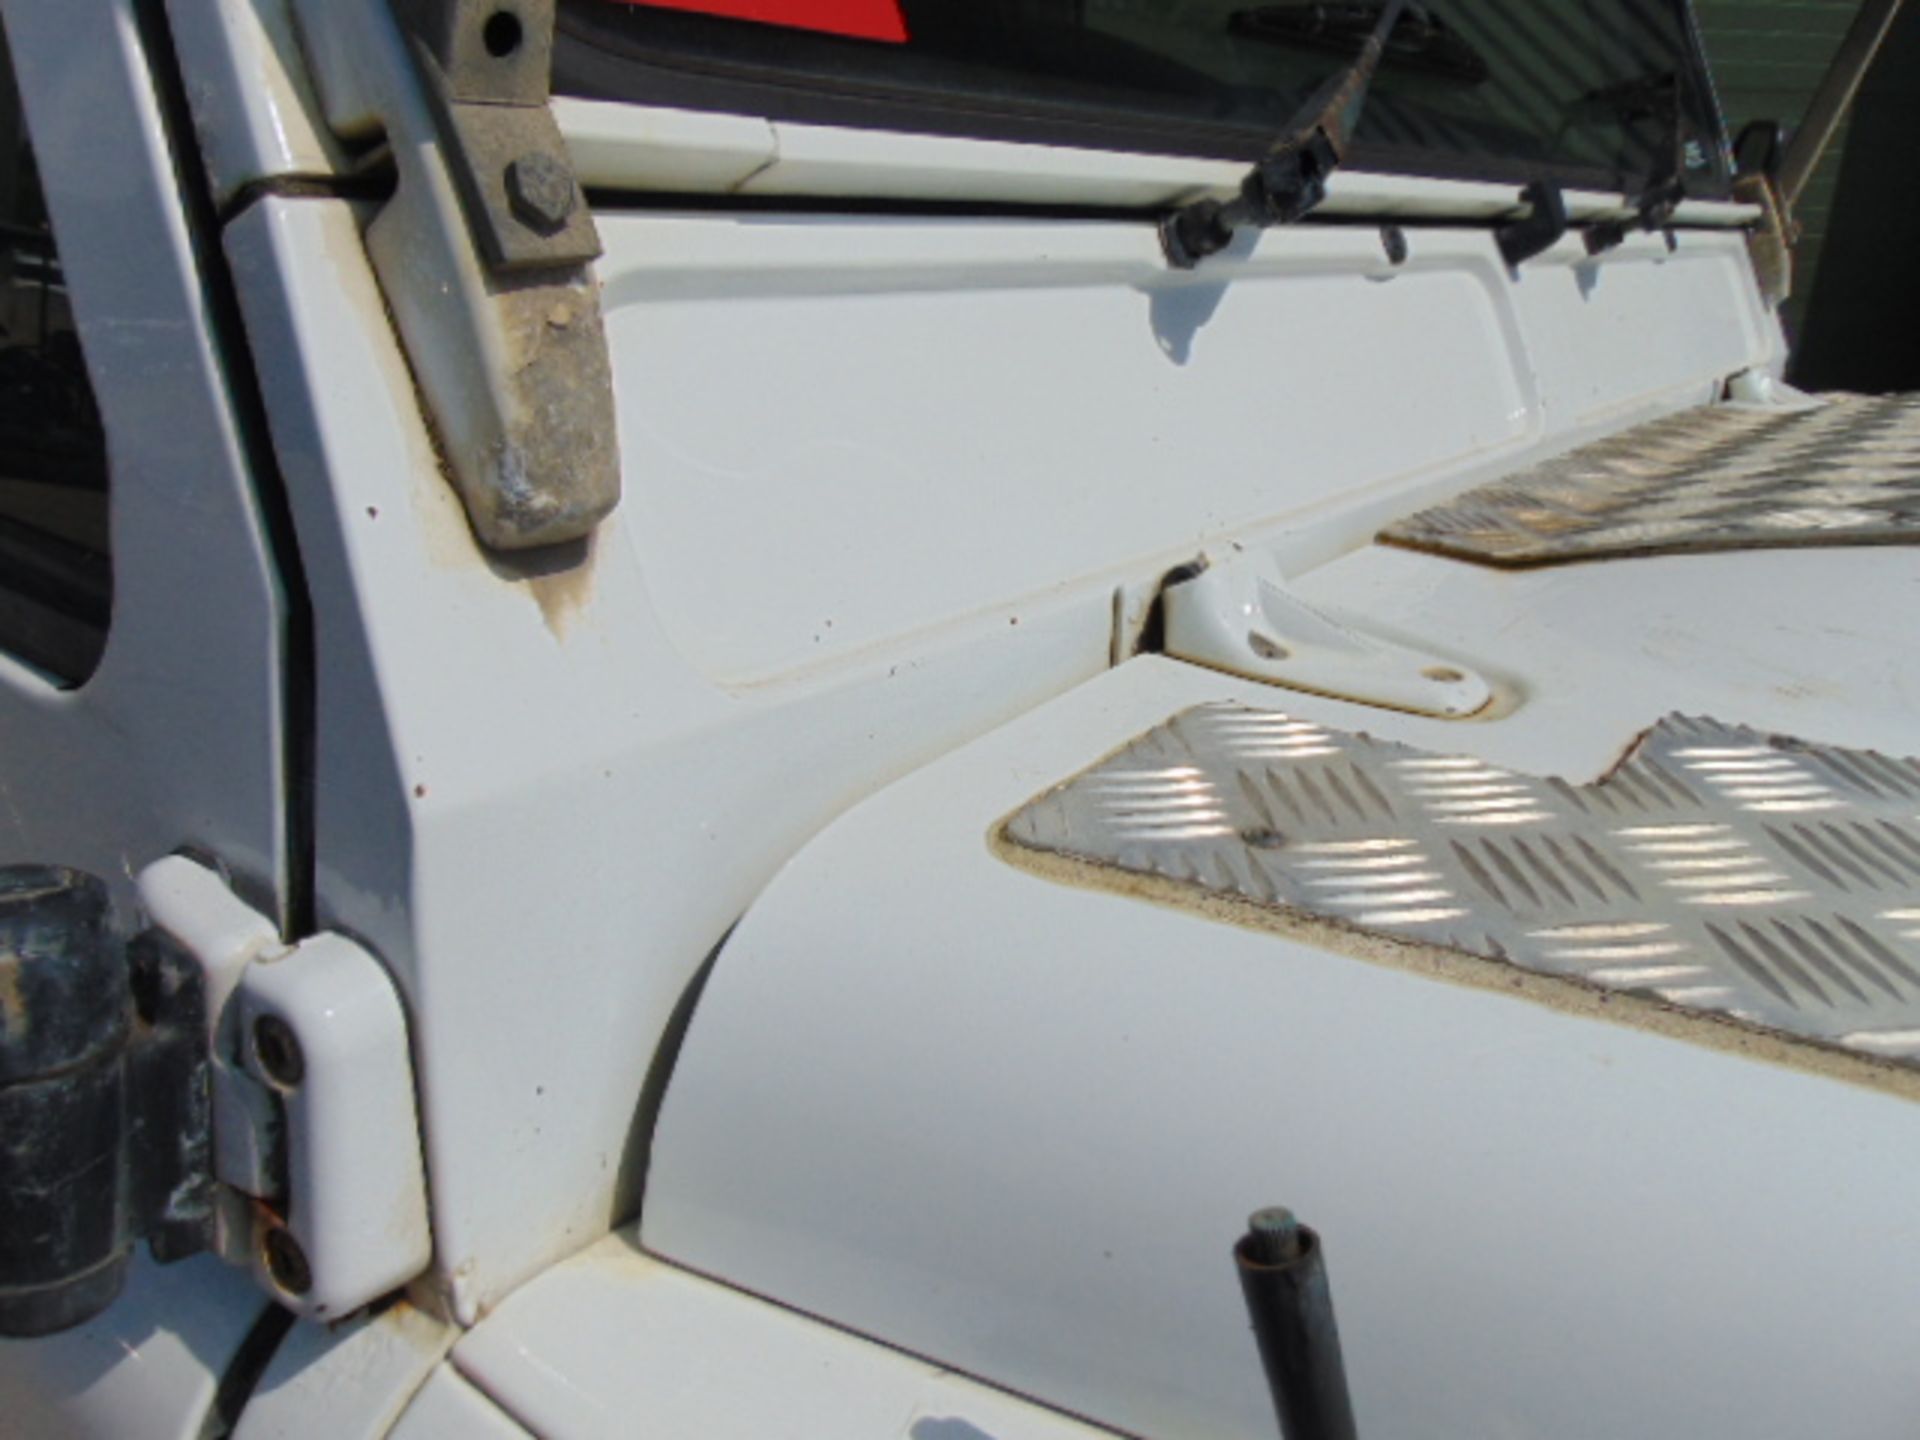 2011 Land Rover Defender 110 Puma hardtop 4x4 Utility vehicle (mobile workshop) - Image 13 of 34